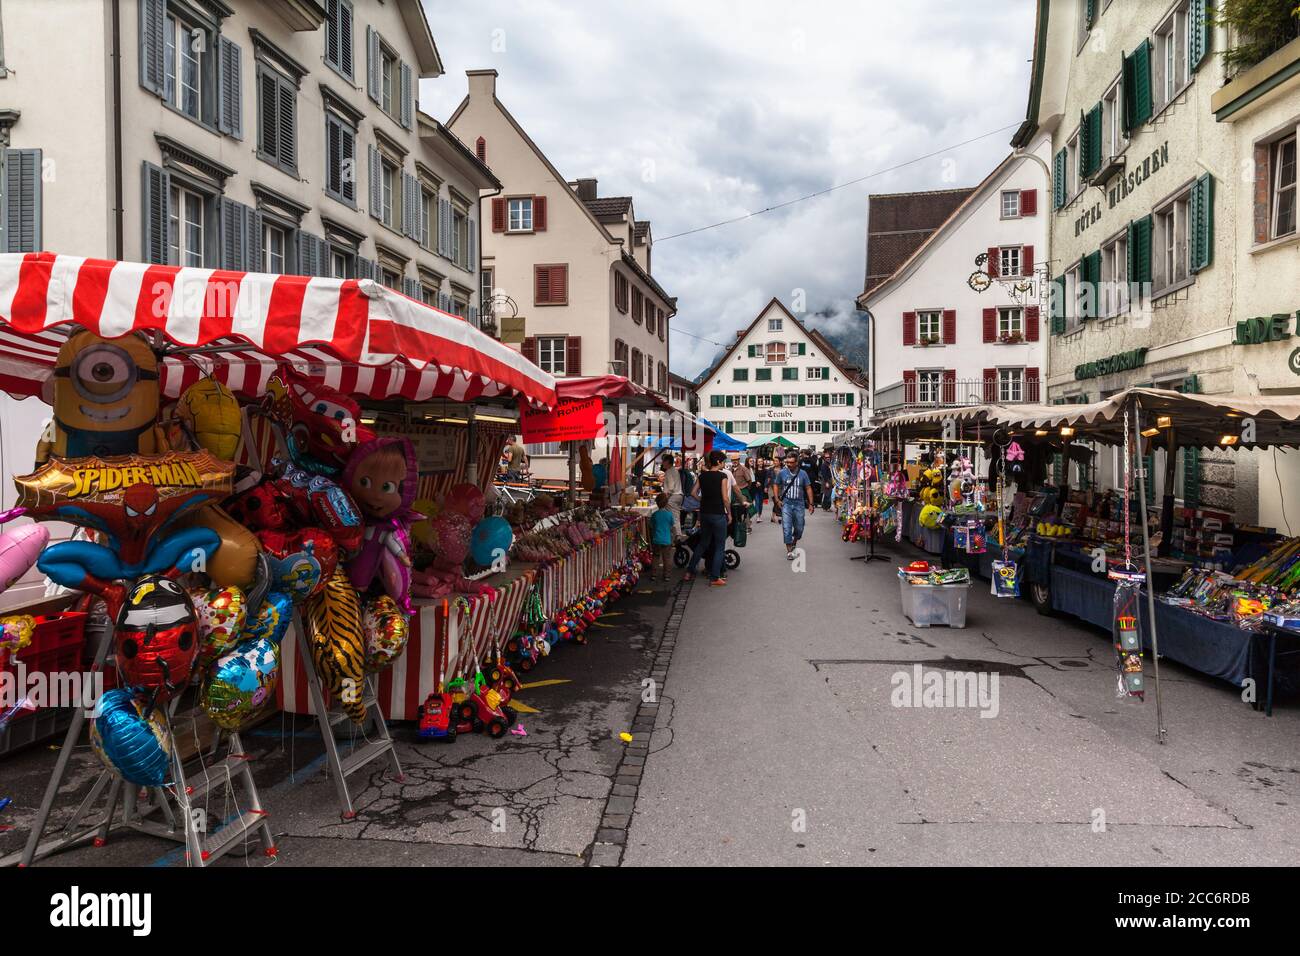 Walenstadt, Switzerland - August 6, 2016 - Weekend flea market in the small town Walenstadt, Canton of St. Gallen, Switzerland Stock Photo